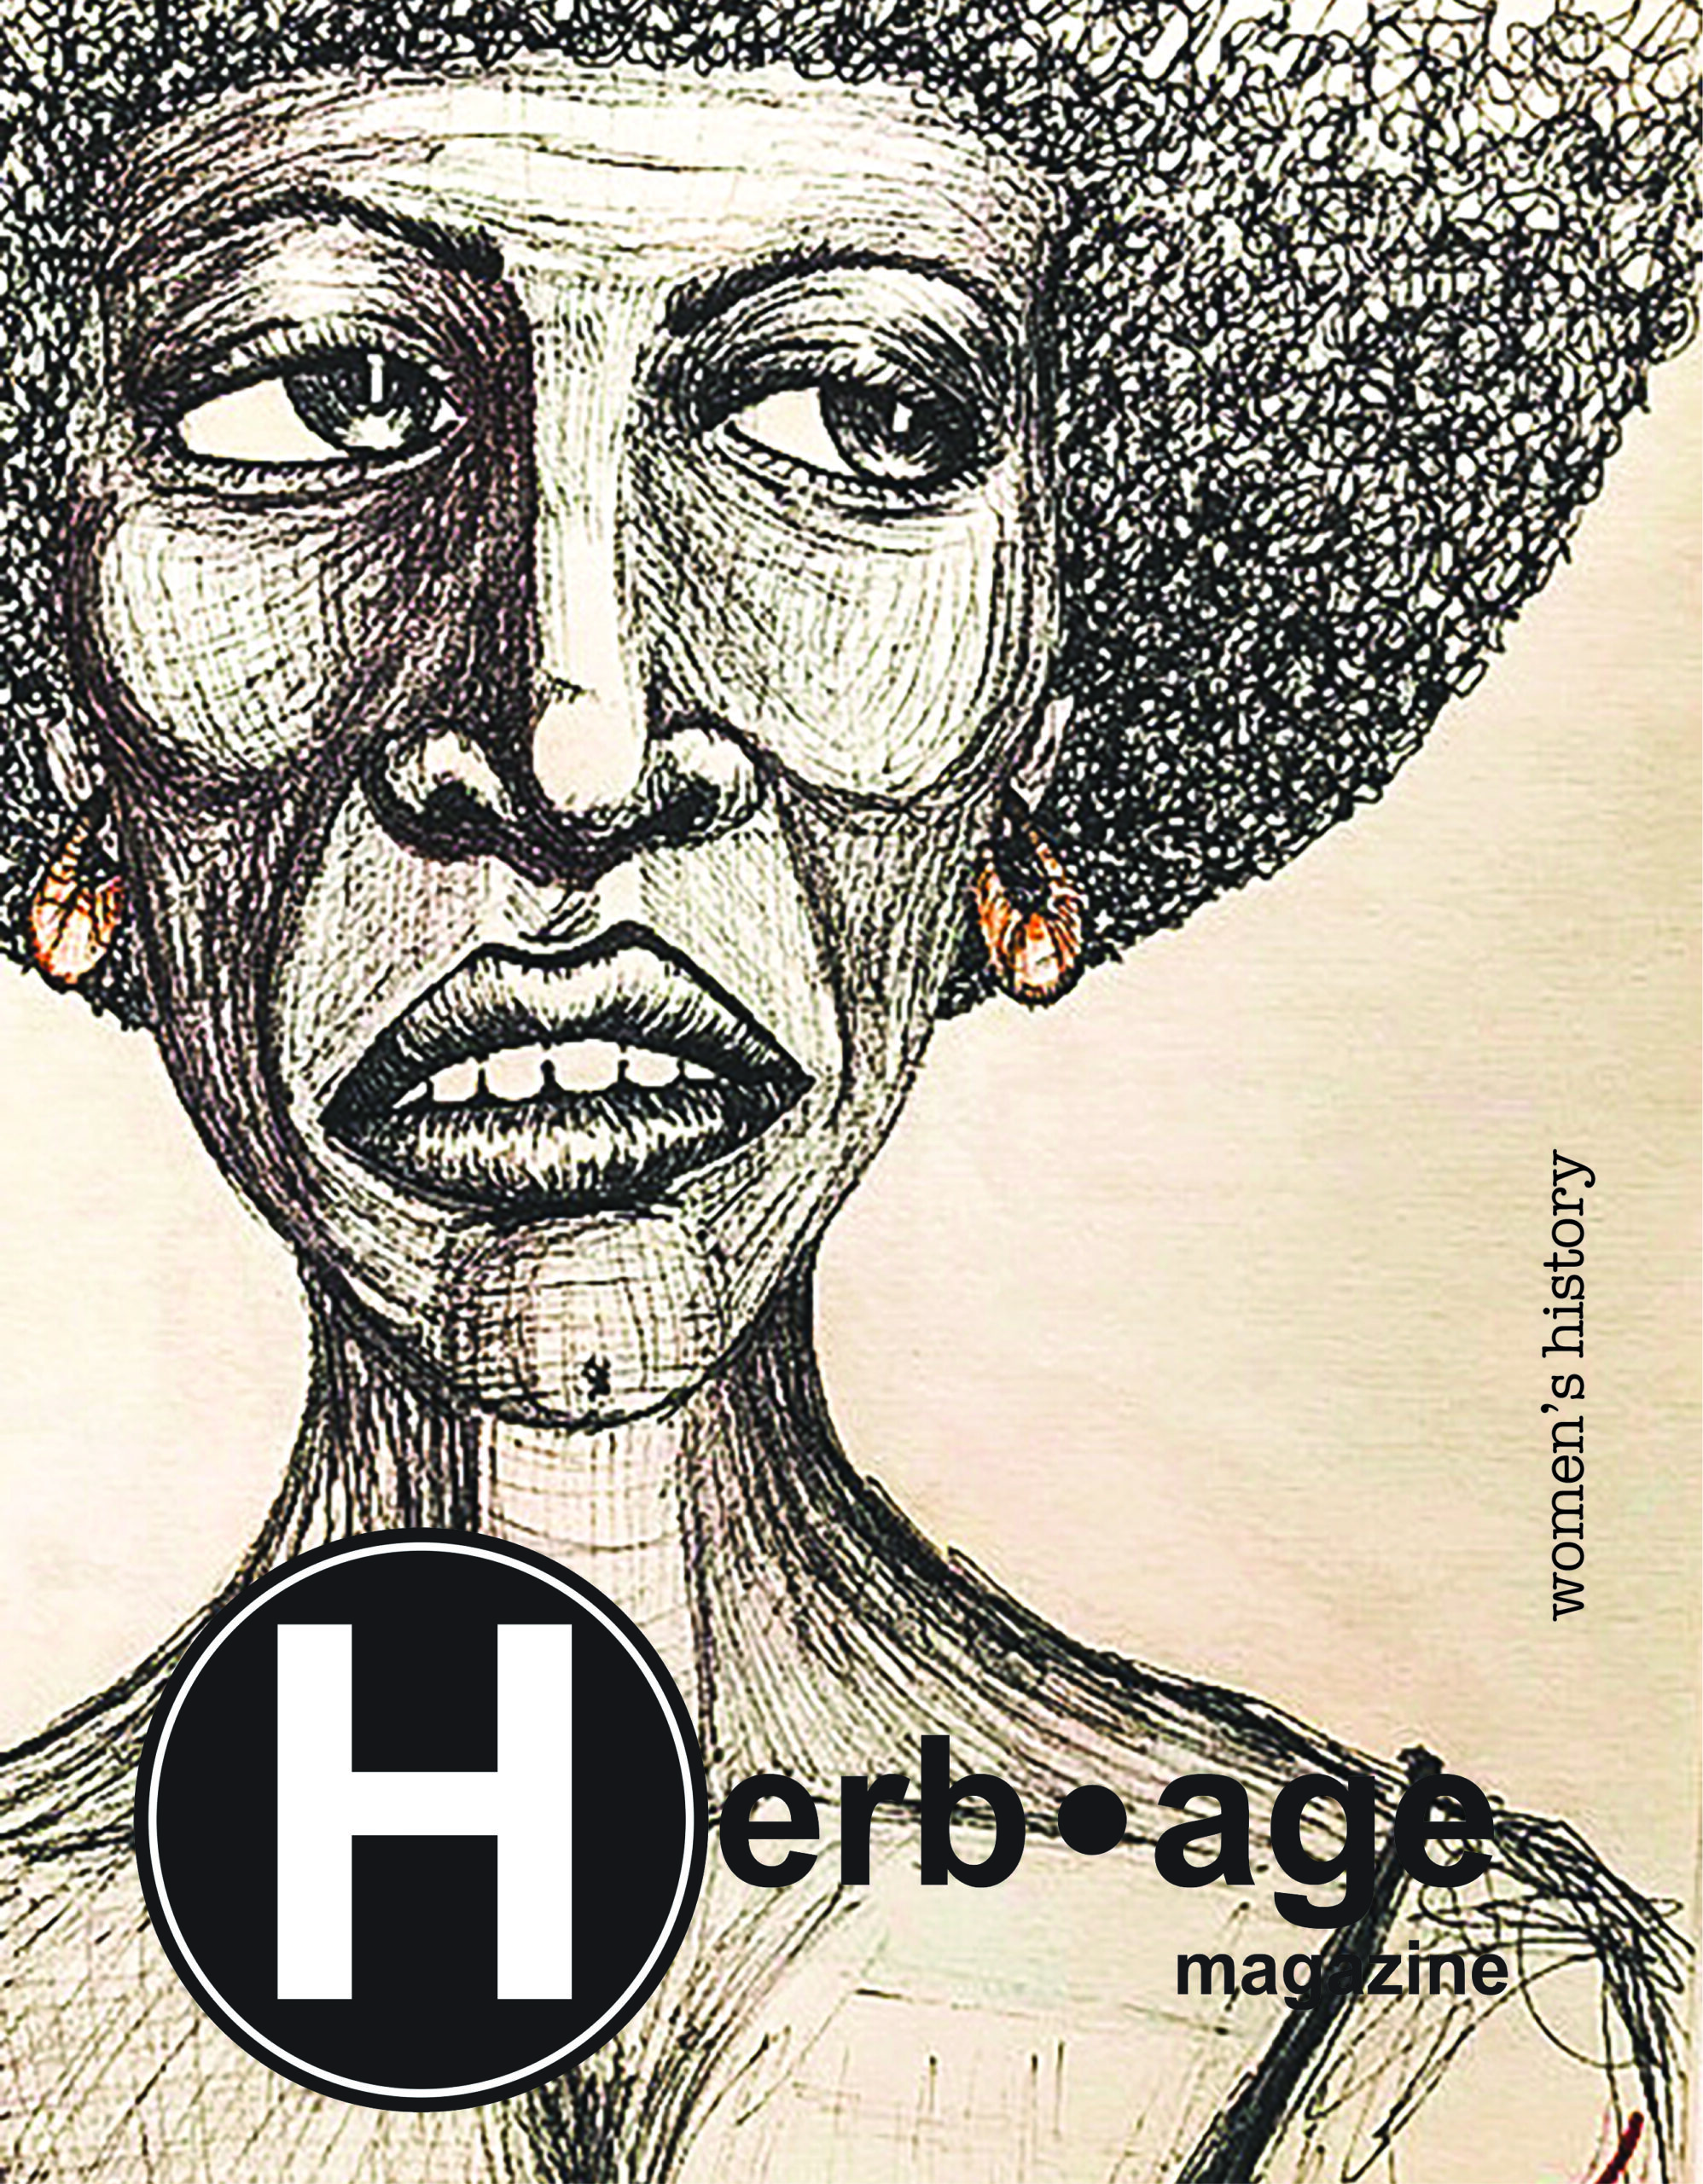 Herbage Magazine – March 2021